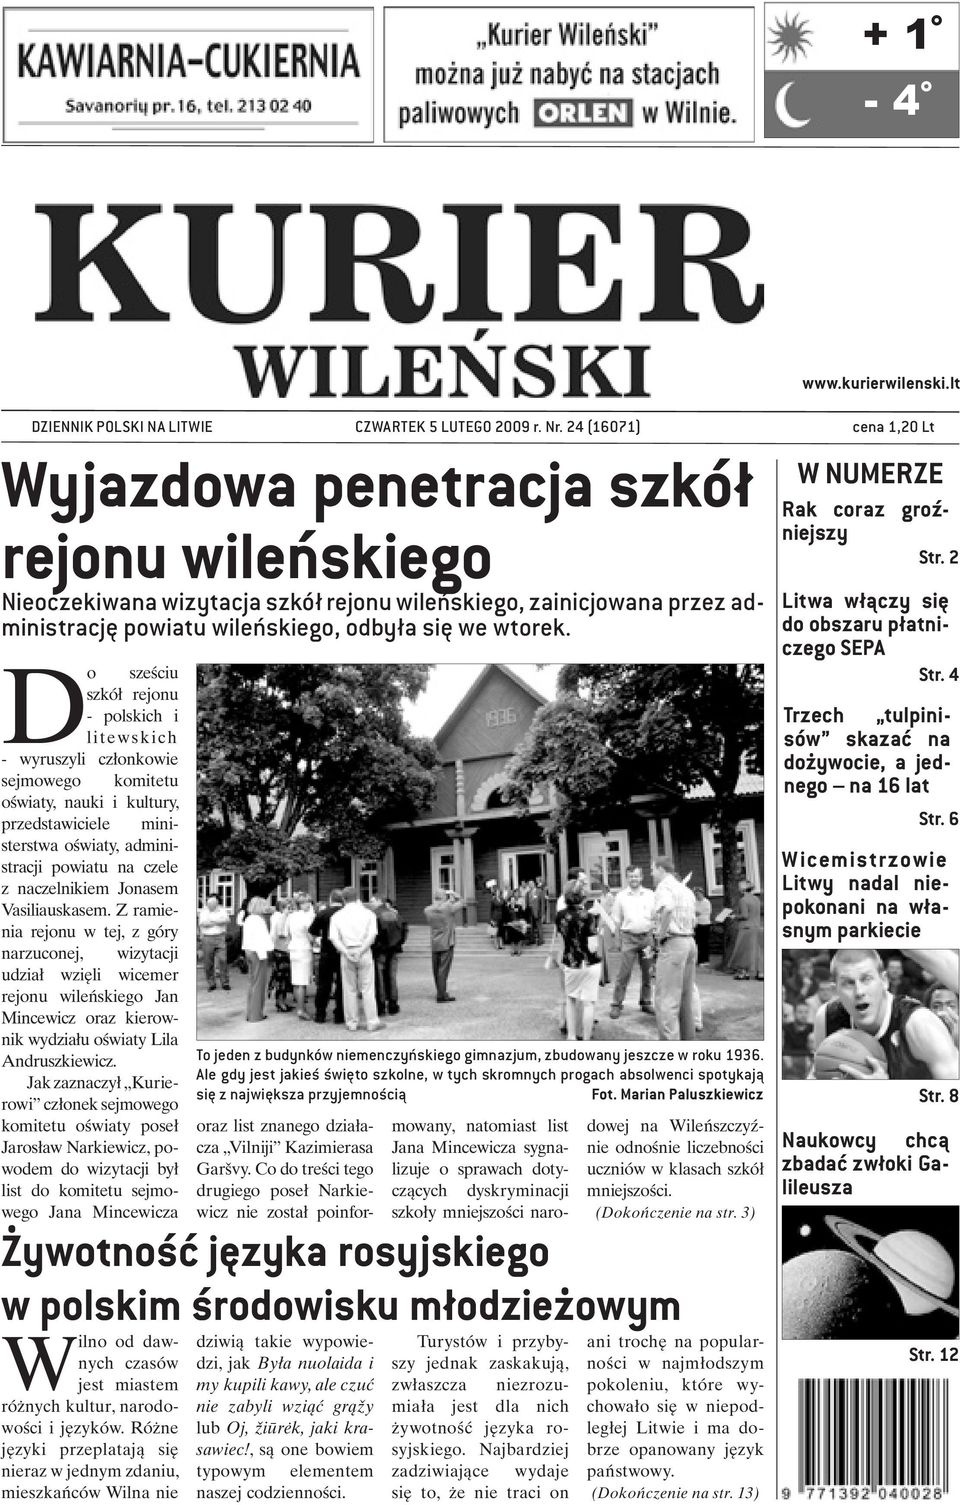 Do sześciu szkół rejonu - polskich i litewskich - wyruszyli członkowie sejmowego komitetu oświaty, nauki i kultury, przedstawiciele ministerstwa oświaty, administracji powiatu na czele z naczelnikiem